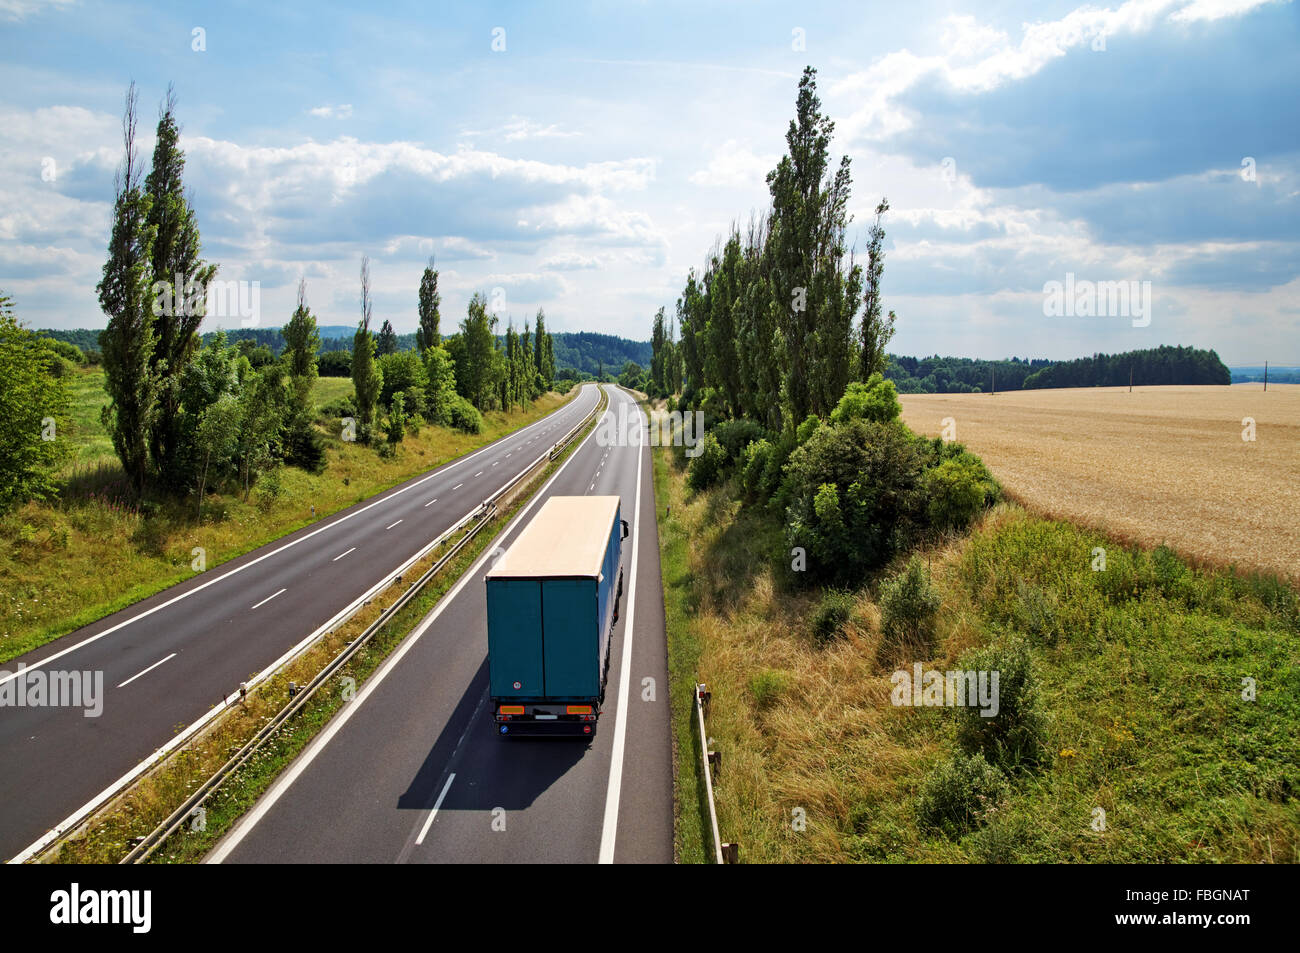 Il paesaggio rurale con una autostrada che conduce il vicolo di pioppo, carrello la guida in autostrada, vista da sopra Foto Stock